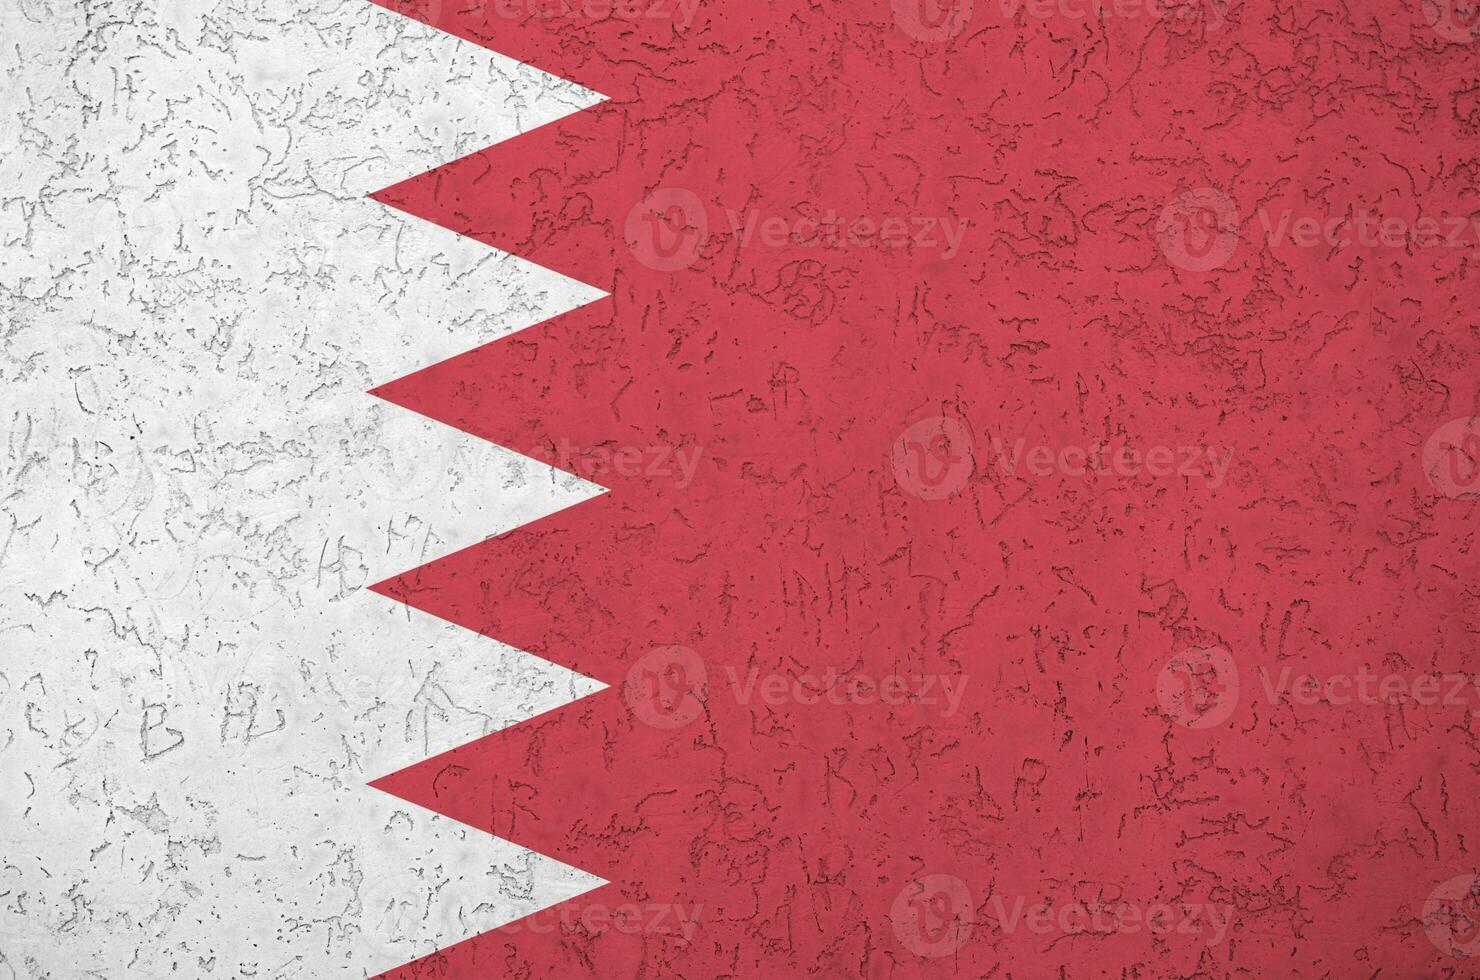 bahrain flagga avbildad i ljus måla färger på gammal lättnad putsning vägg. texturerad baner på grov bakgrund foto